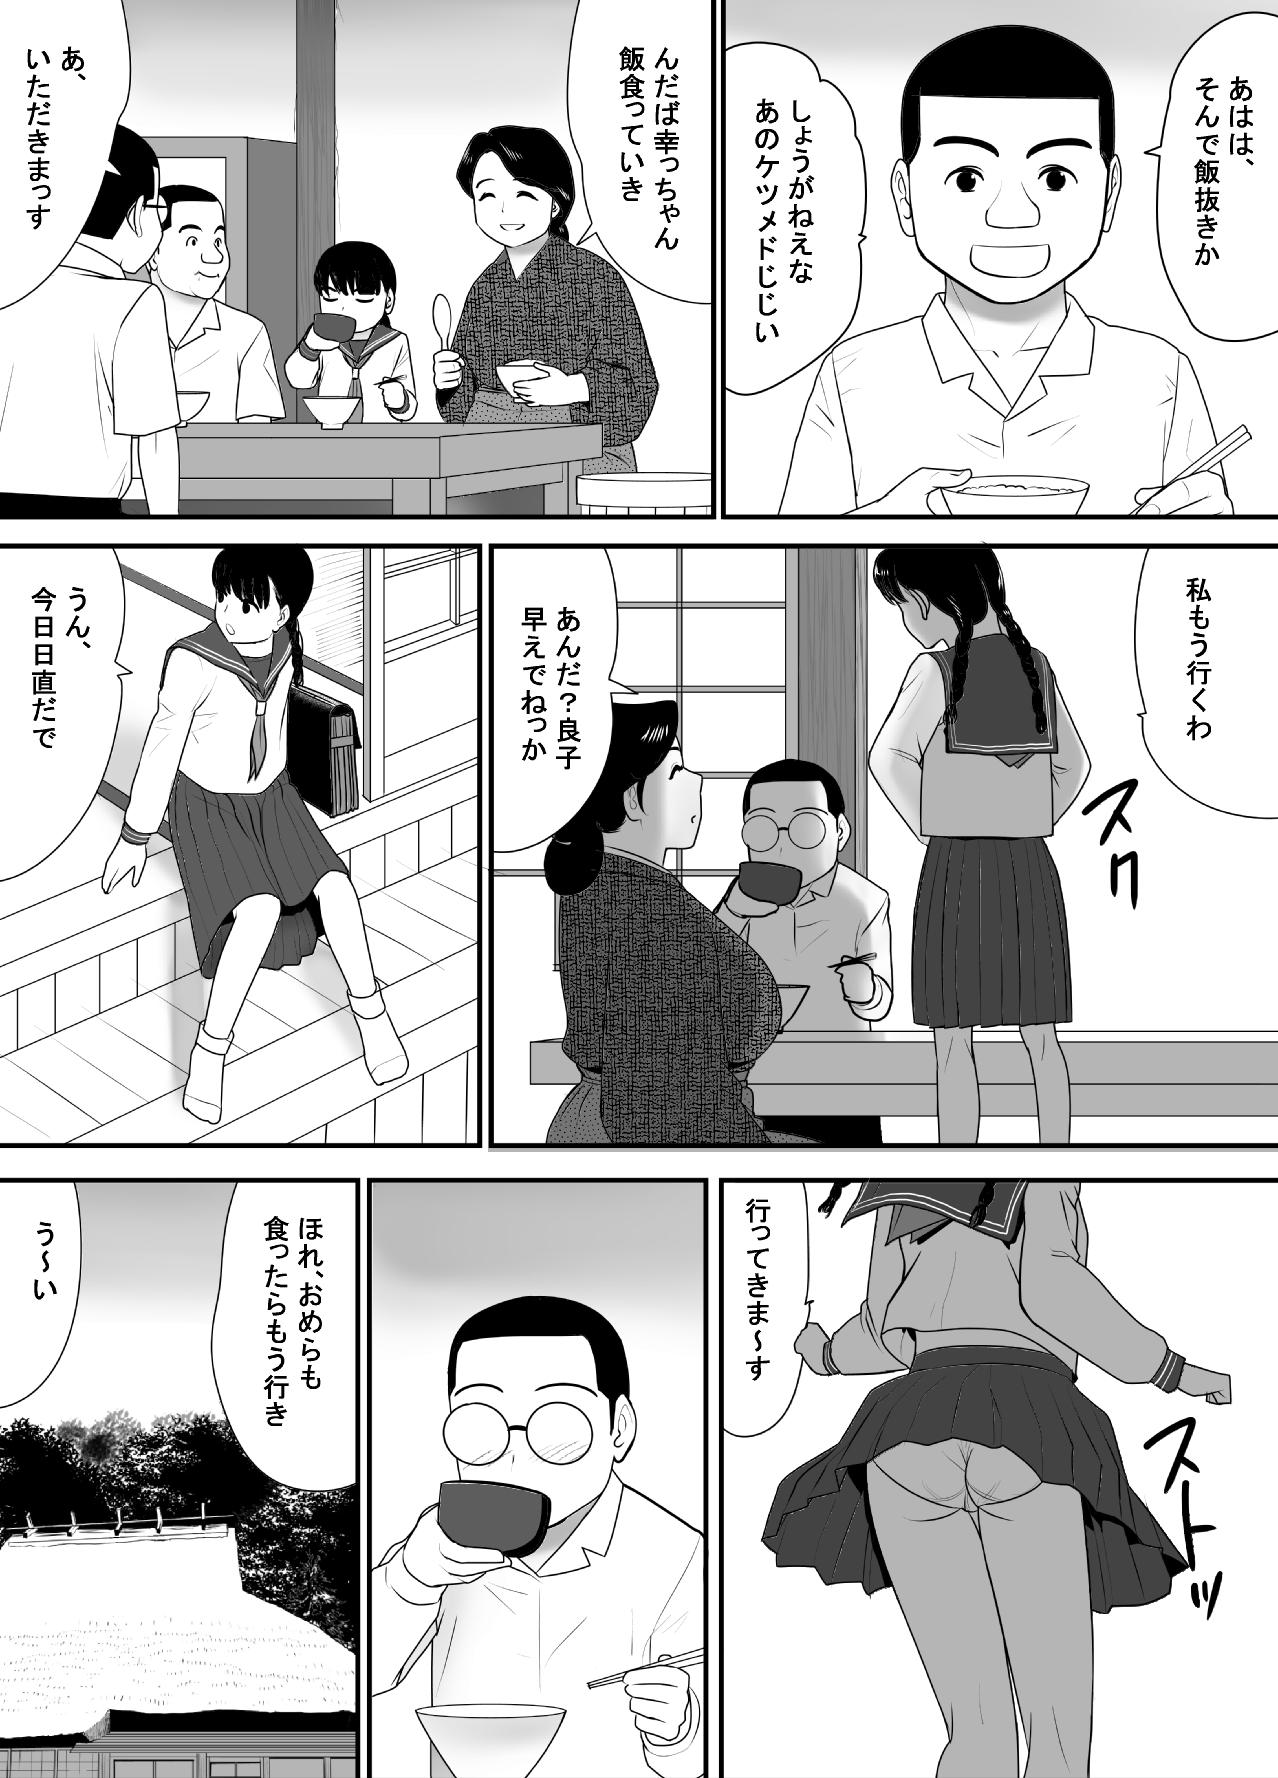 Grandma Subete o Ukeirete Kureru Tomodachi no Okka-san - Original Muscle - Page 6